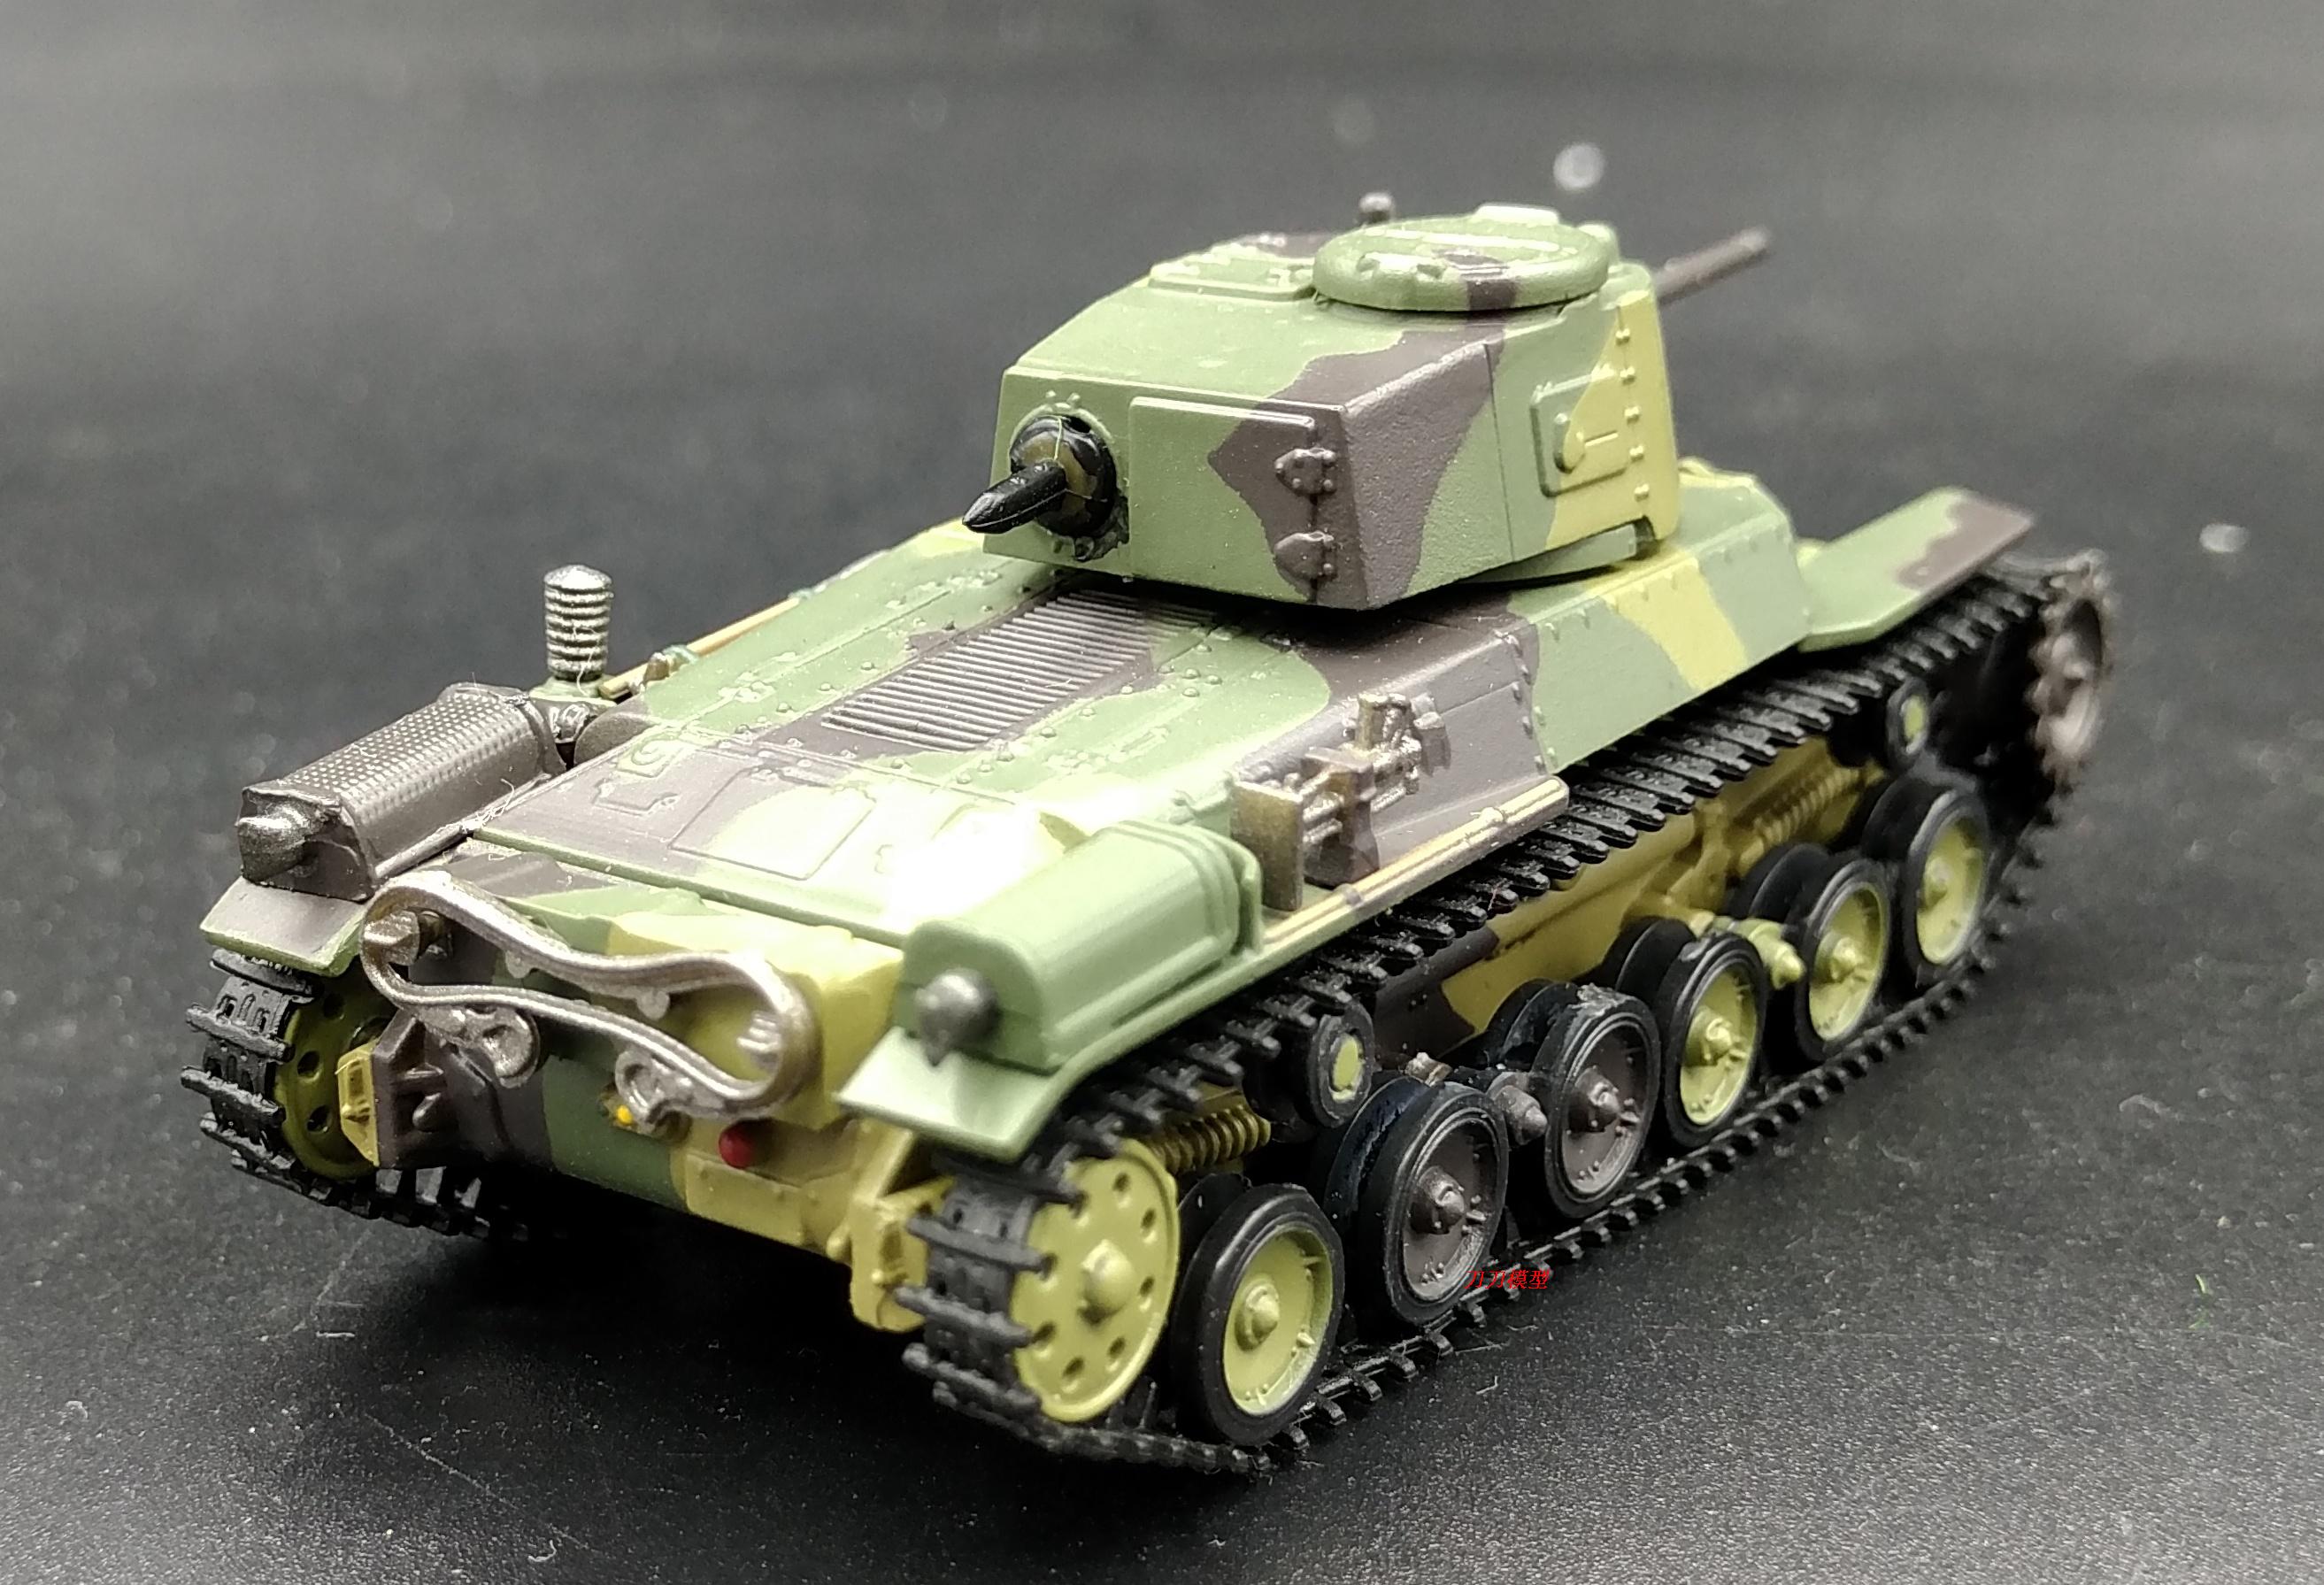 1:72 二战日本 97式 中型坦克 塑料 战车模型 半成品